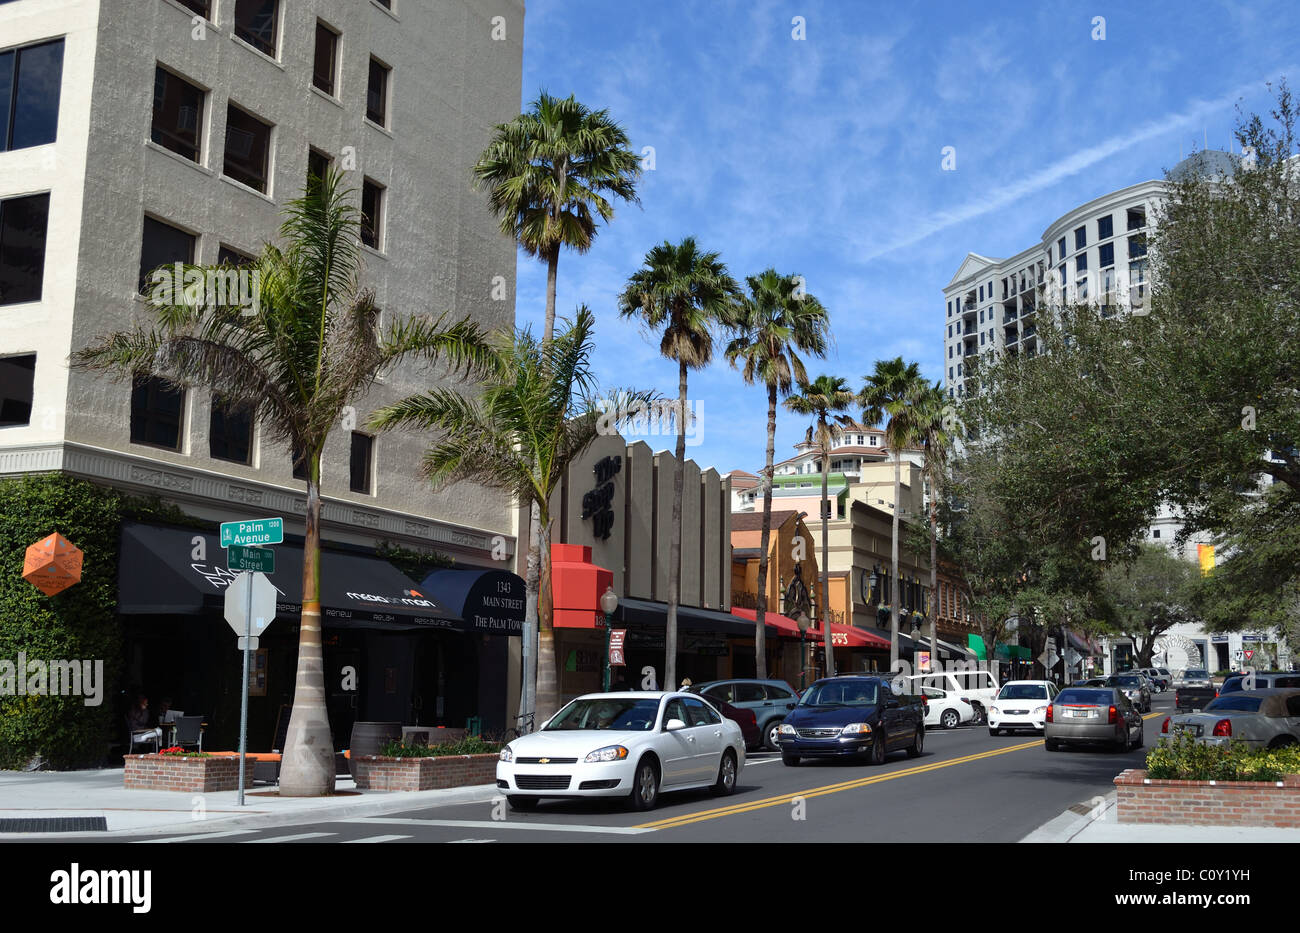 Main Street, Downton Sarasota Florida Stock Photo